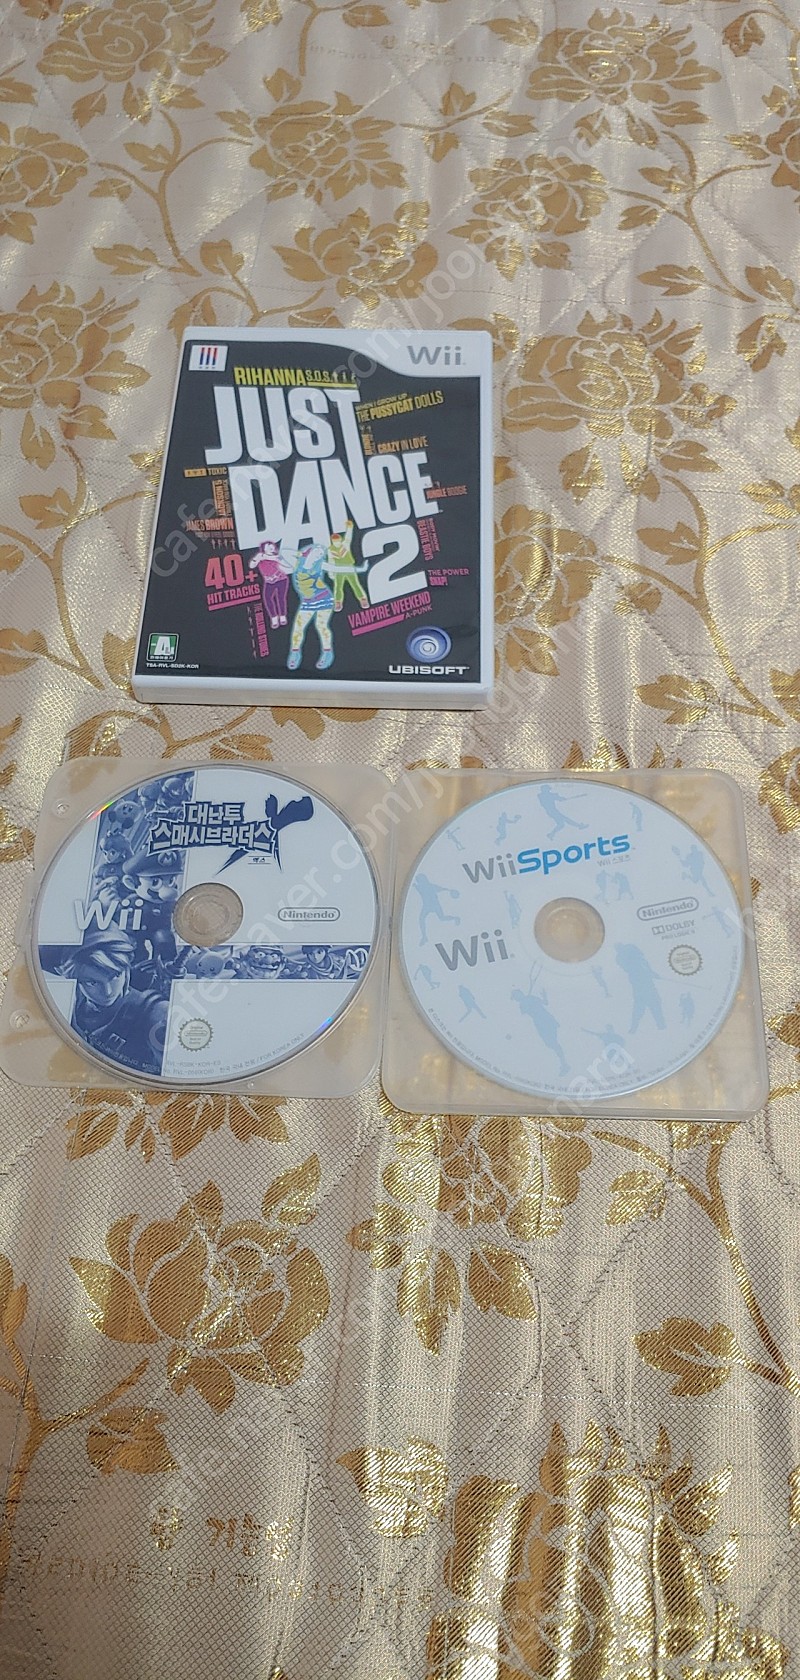 닌텐도 위 wii cd just dance2,저스트댄스2, 대난투스매시브라더스x, wii sports cd